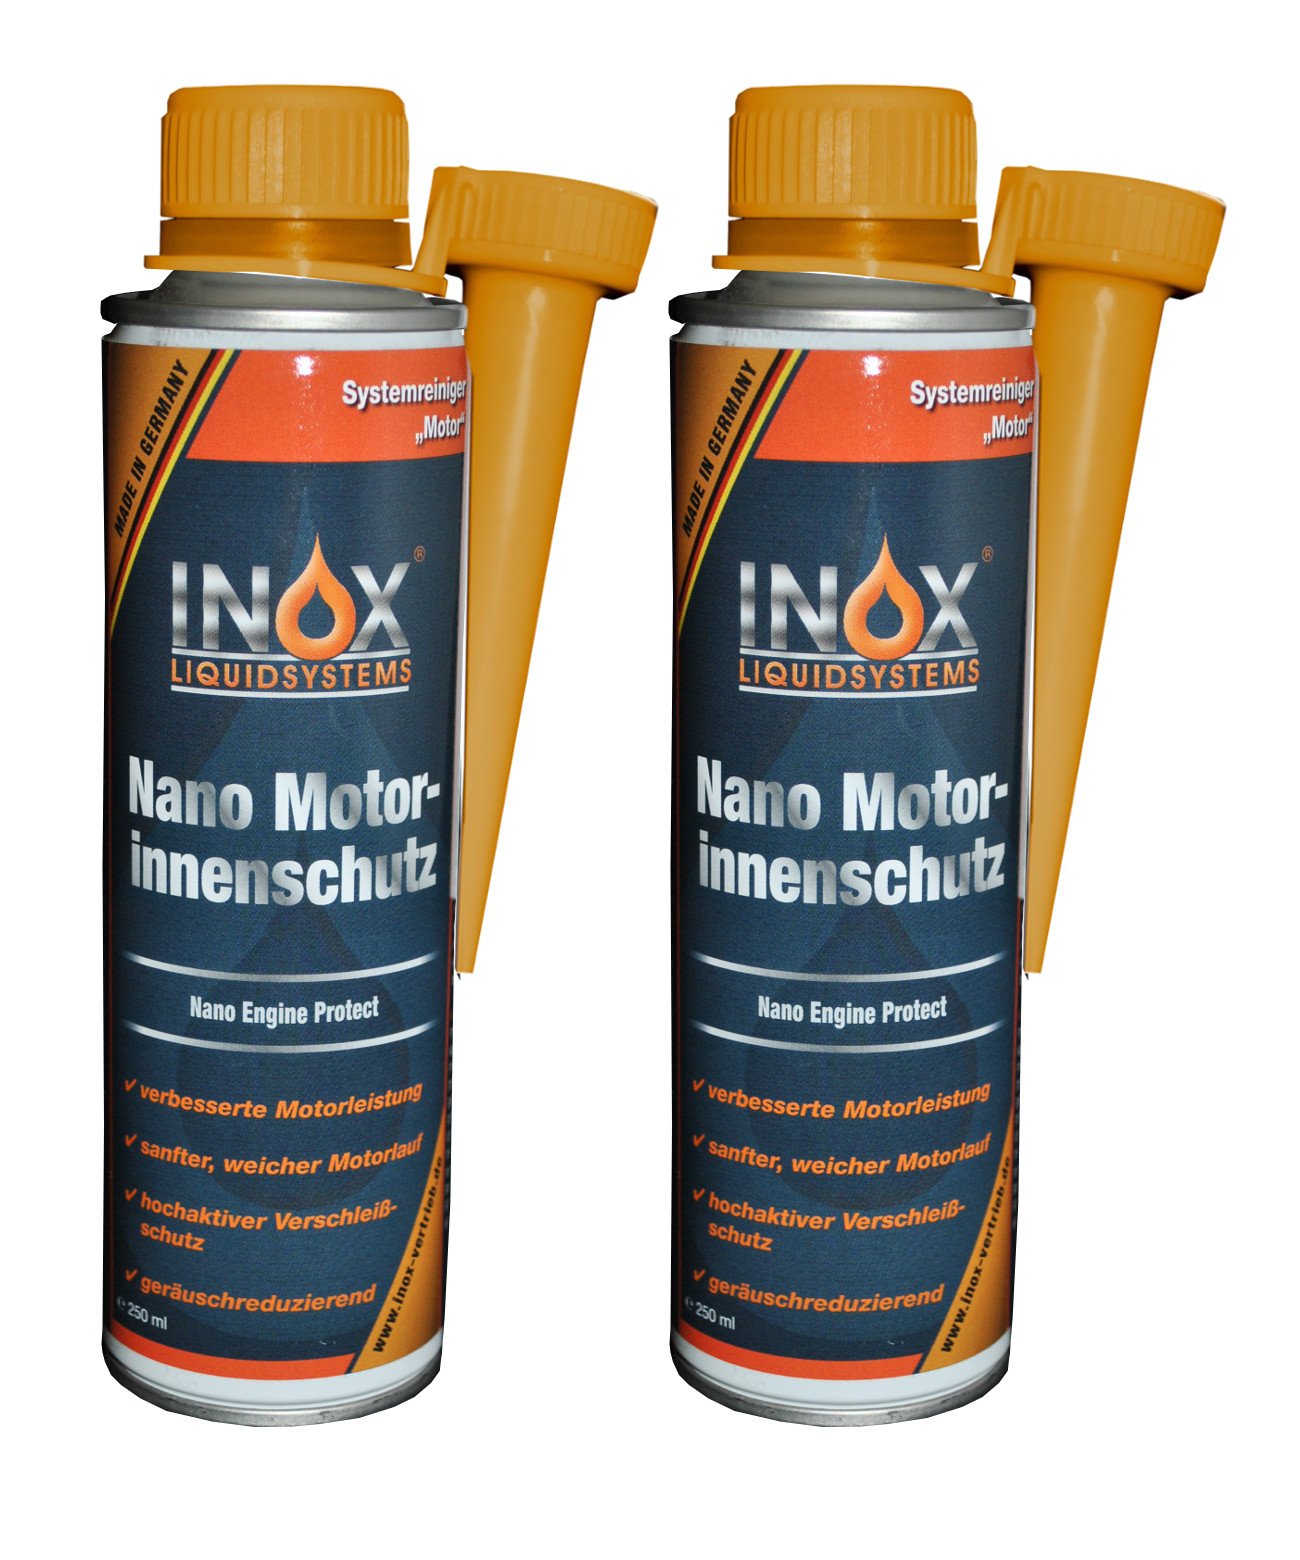 INOX® Nano Motorinnenschutz Additiv, 2 x 250ml - Motorinnenversiegelung verhindert Verschleiß für alle Benzin- und Dieselmotoren von INOX-LIQUIDSYSTEMS